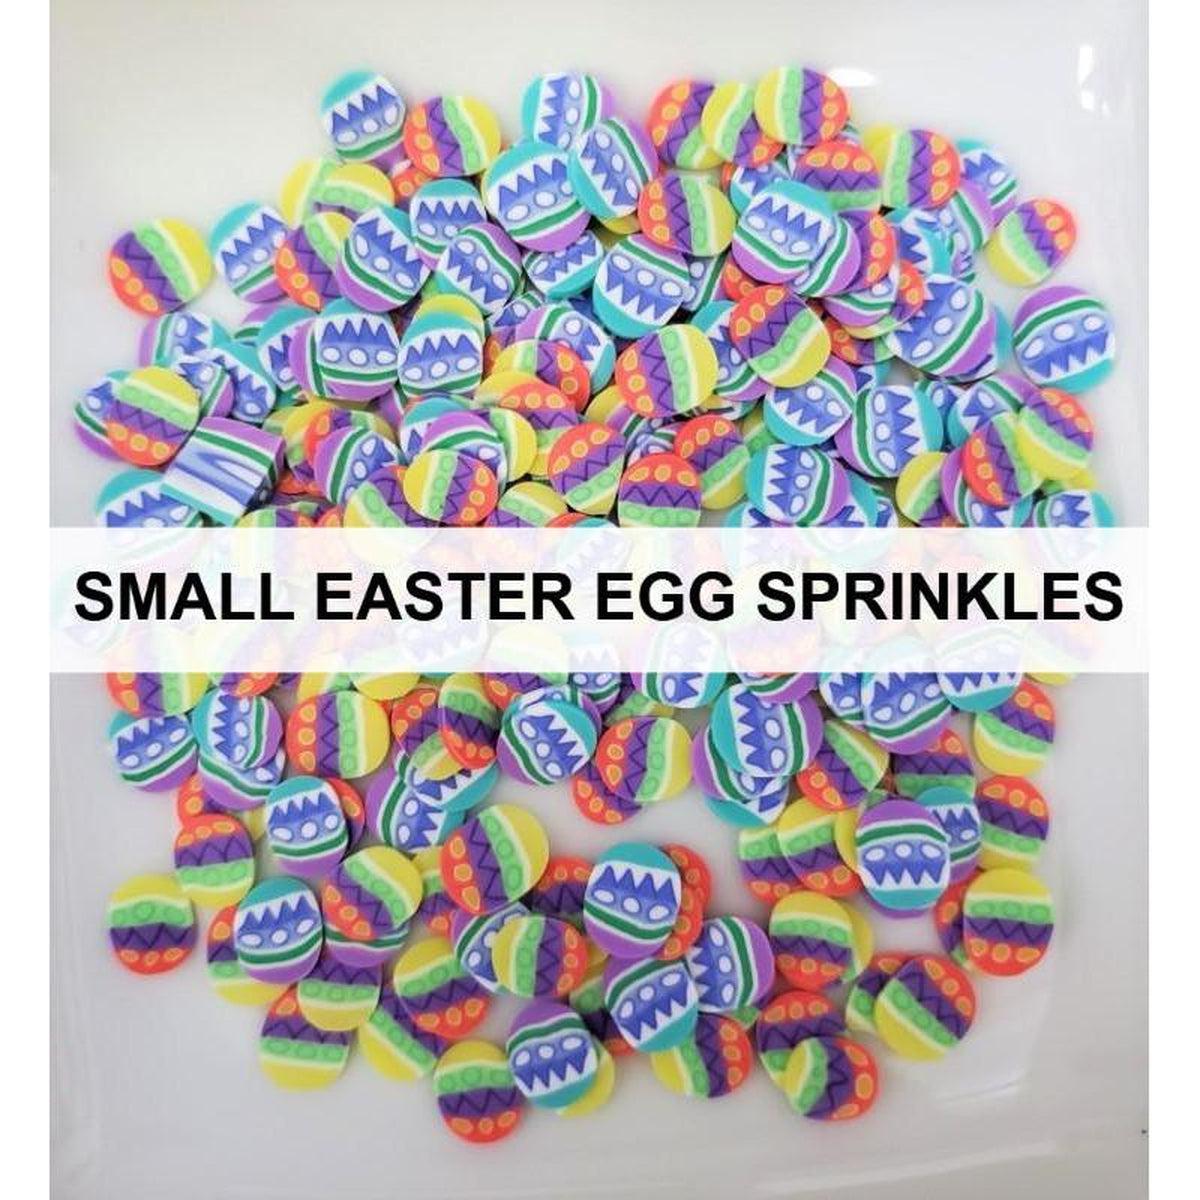 Small Easter Egg Sprinkles